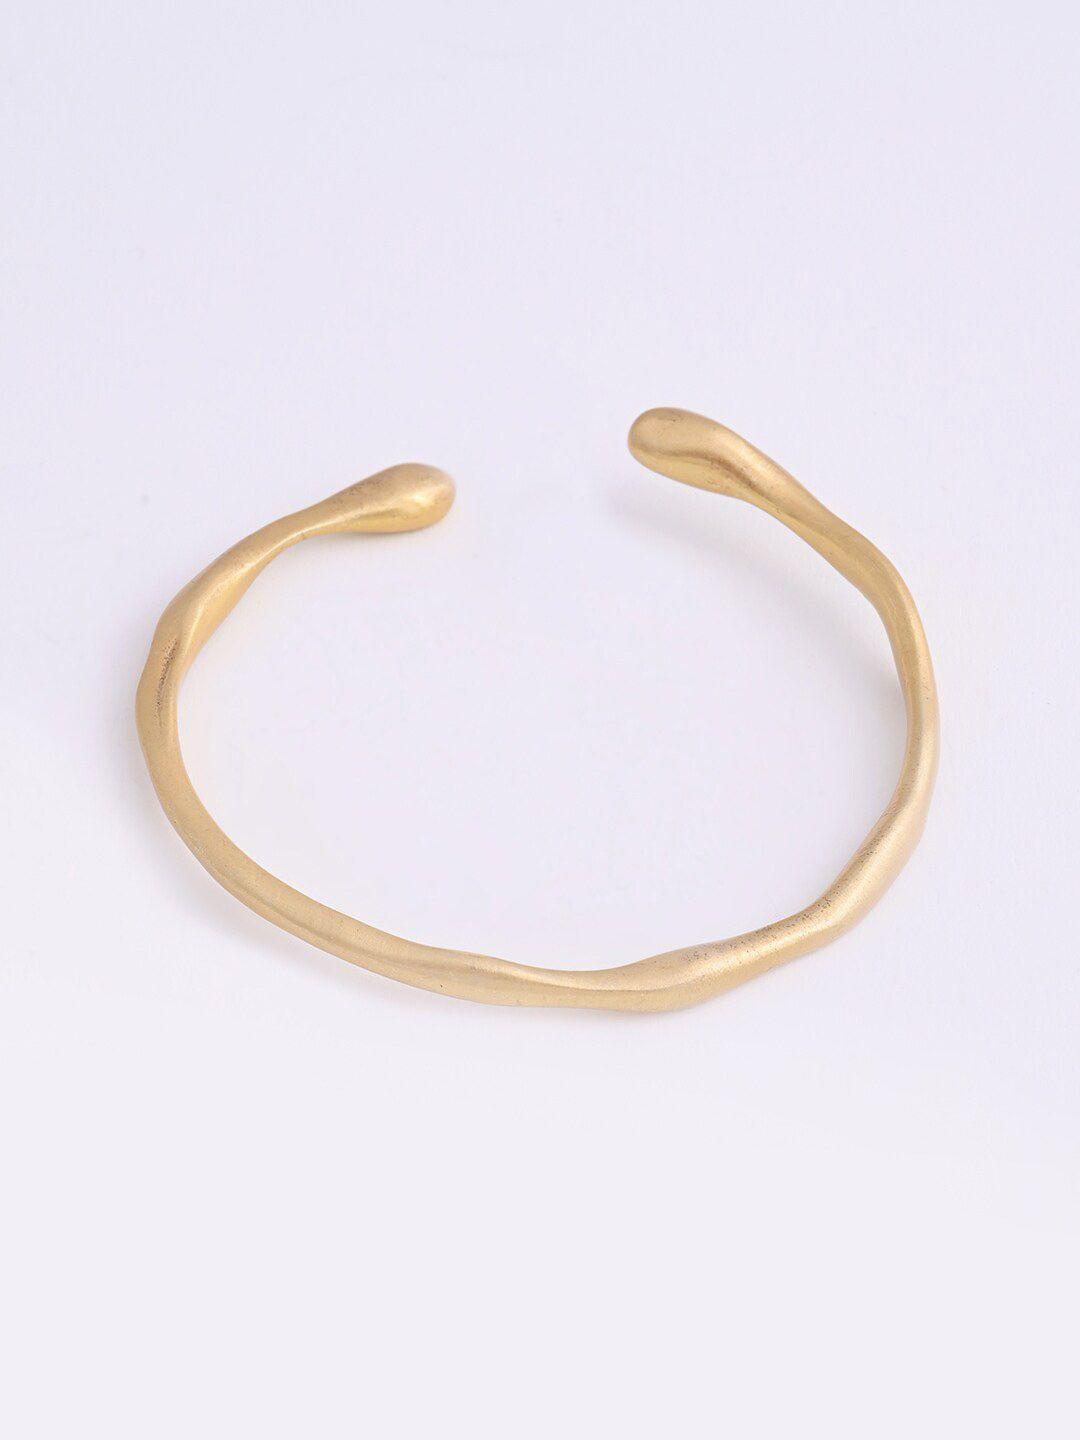 xpnsv women gold-toned brass kada bracelet